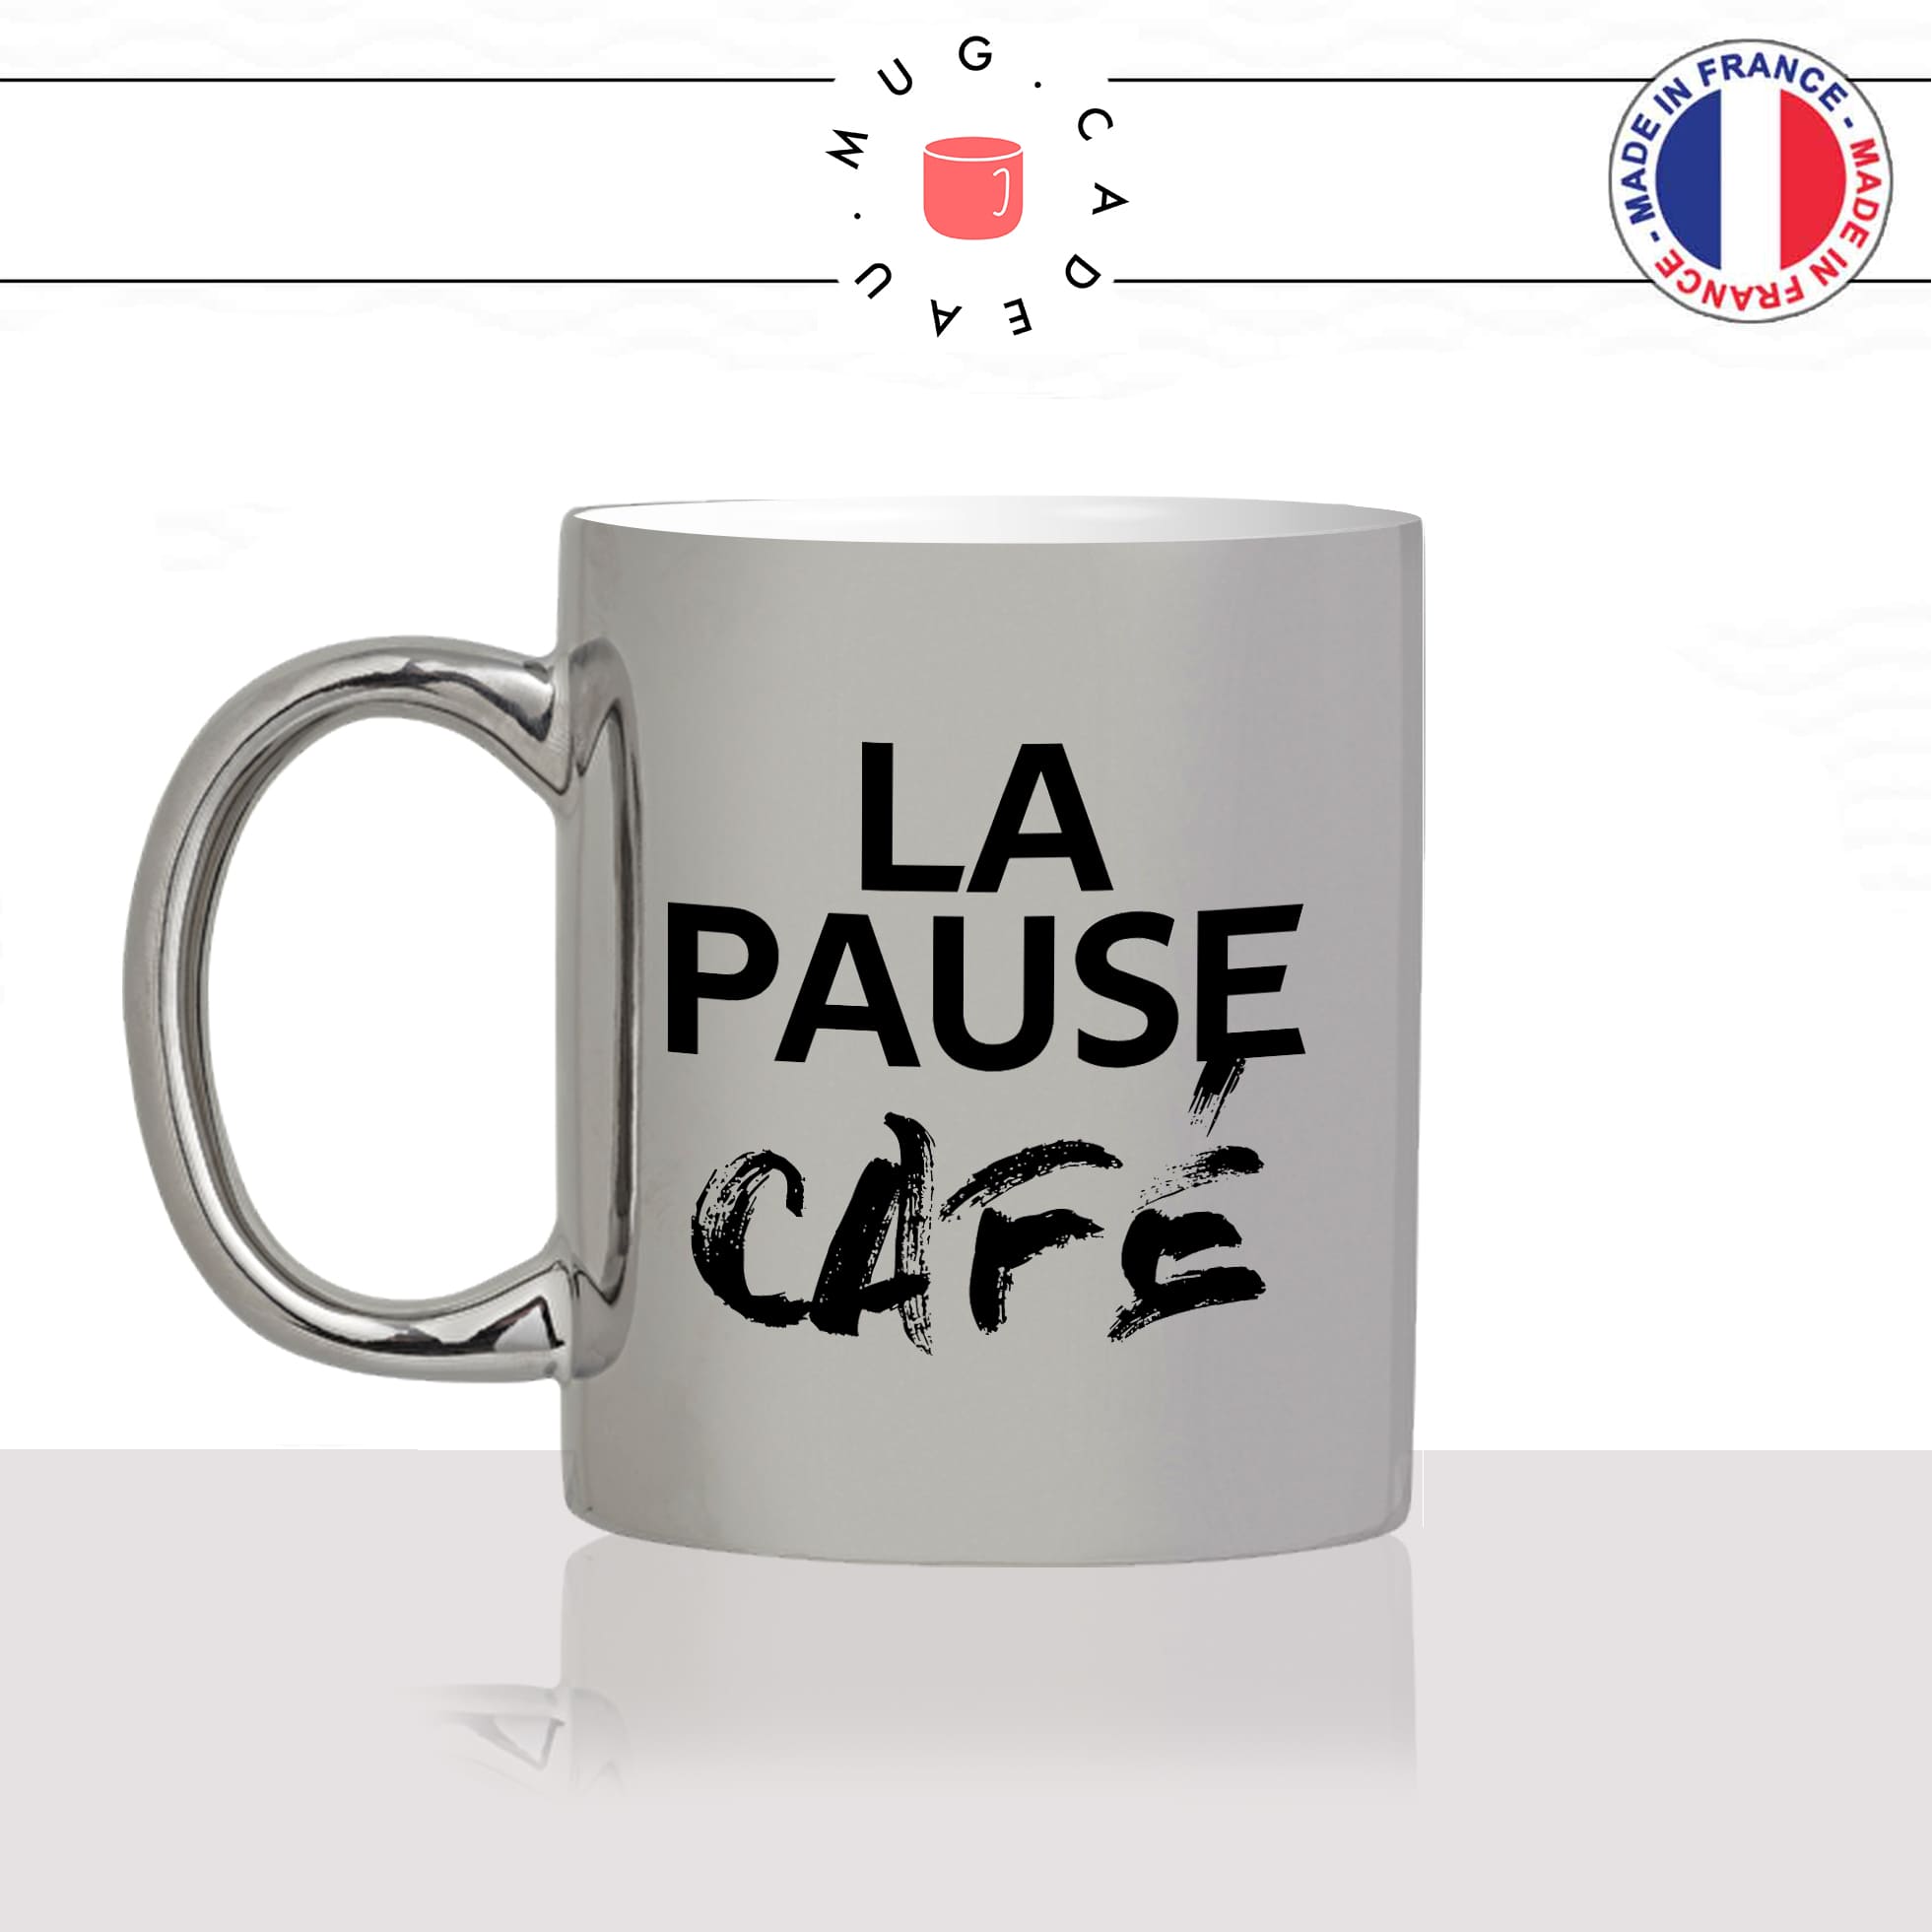 mug-tasse-argenté-argent-gris-silver-la-pause-café-thé-collegue-travail-boulot-homme-femme-accro-humour-fun-idée-cadeau-originale-cool